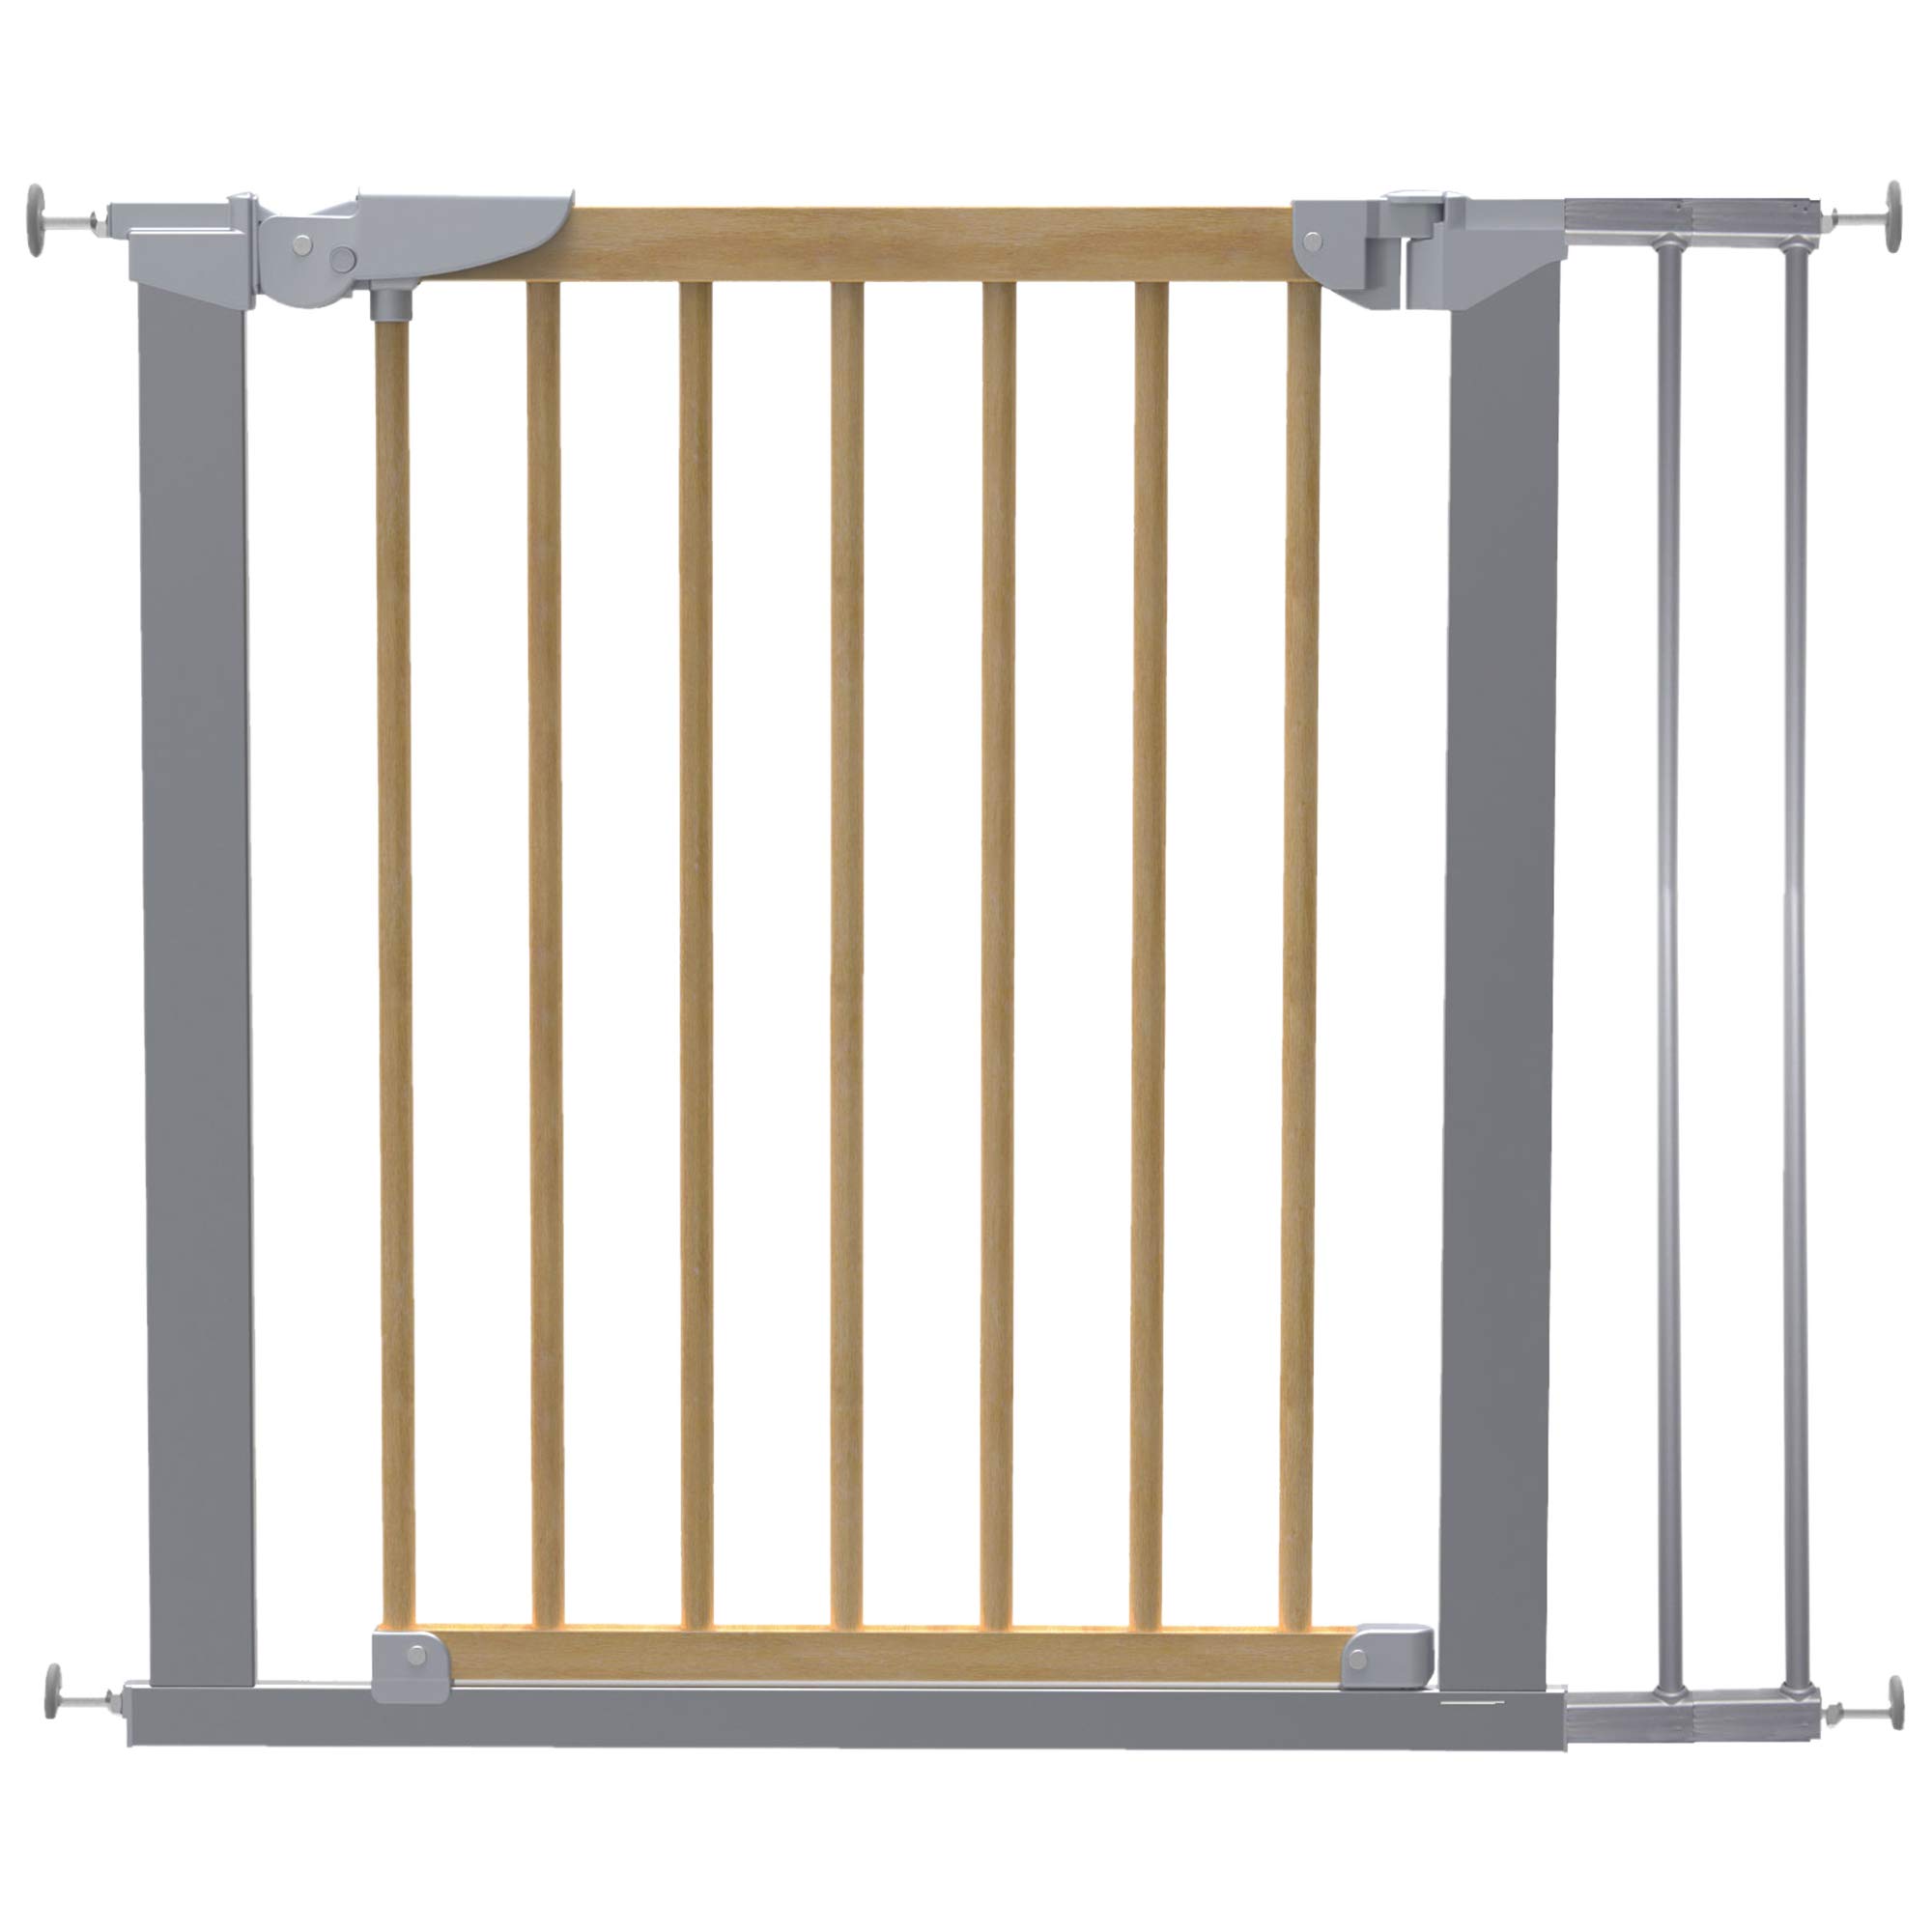 DOLLE Türschutzgitter aus Holz/Metall | Schwenkgitter | Breite: 71,30-97,60 cm | Höhe: 73 cm | Farbe: grau metallic | Kindersicherheitsgitter mit Einhand-Sicherheitsverschluss | TÜV/GS geprüft